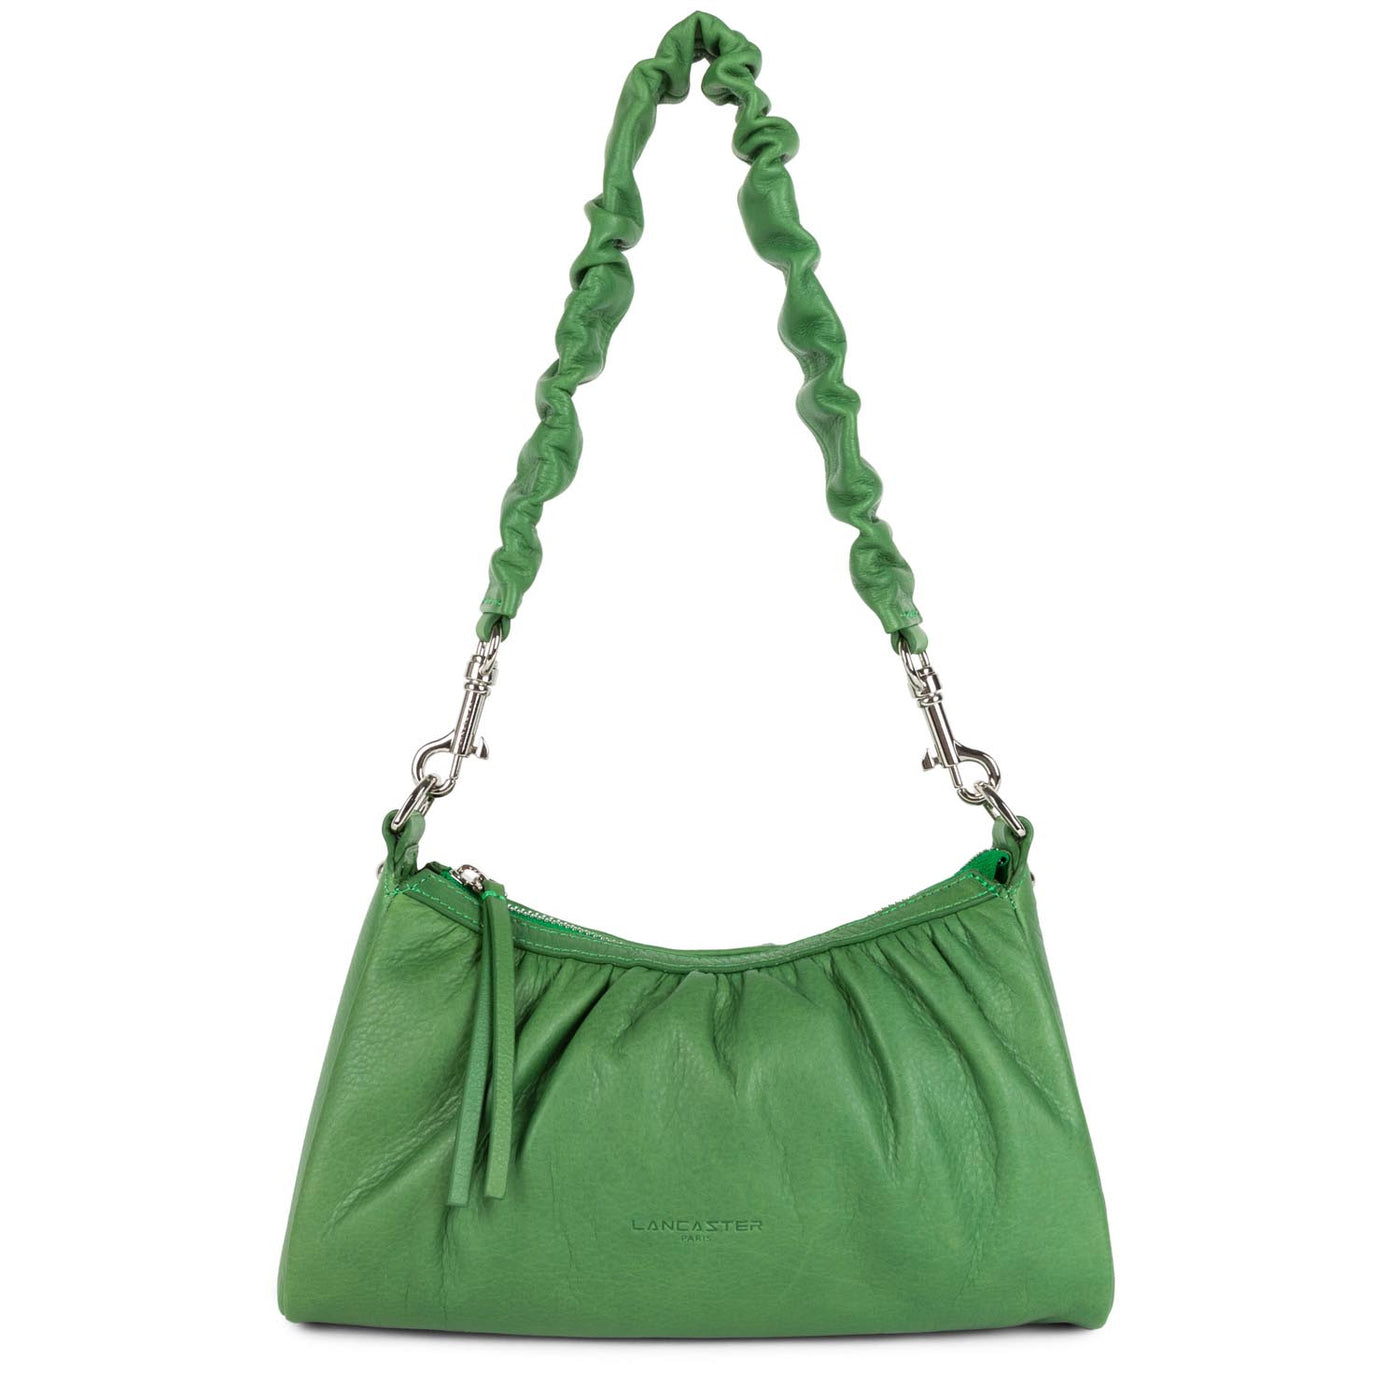 sac trotteur - soft chou chou #couleur_vert